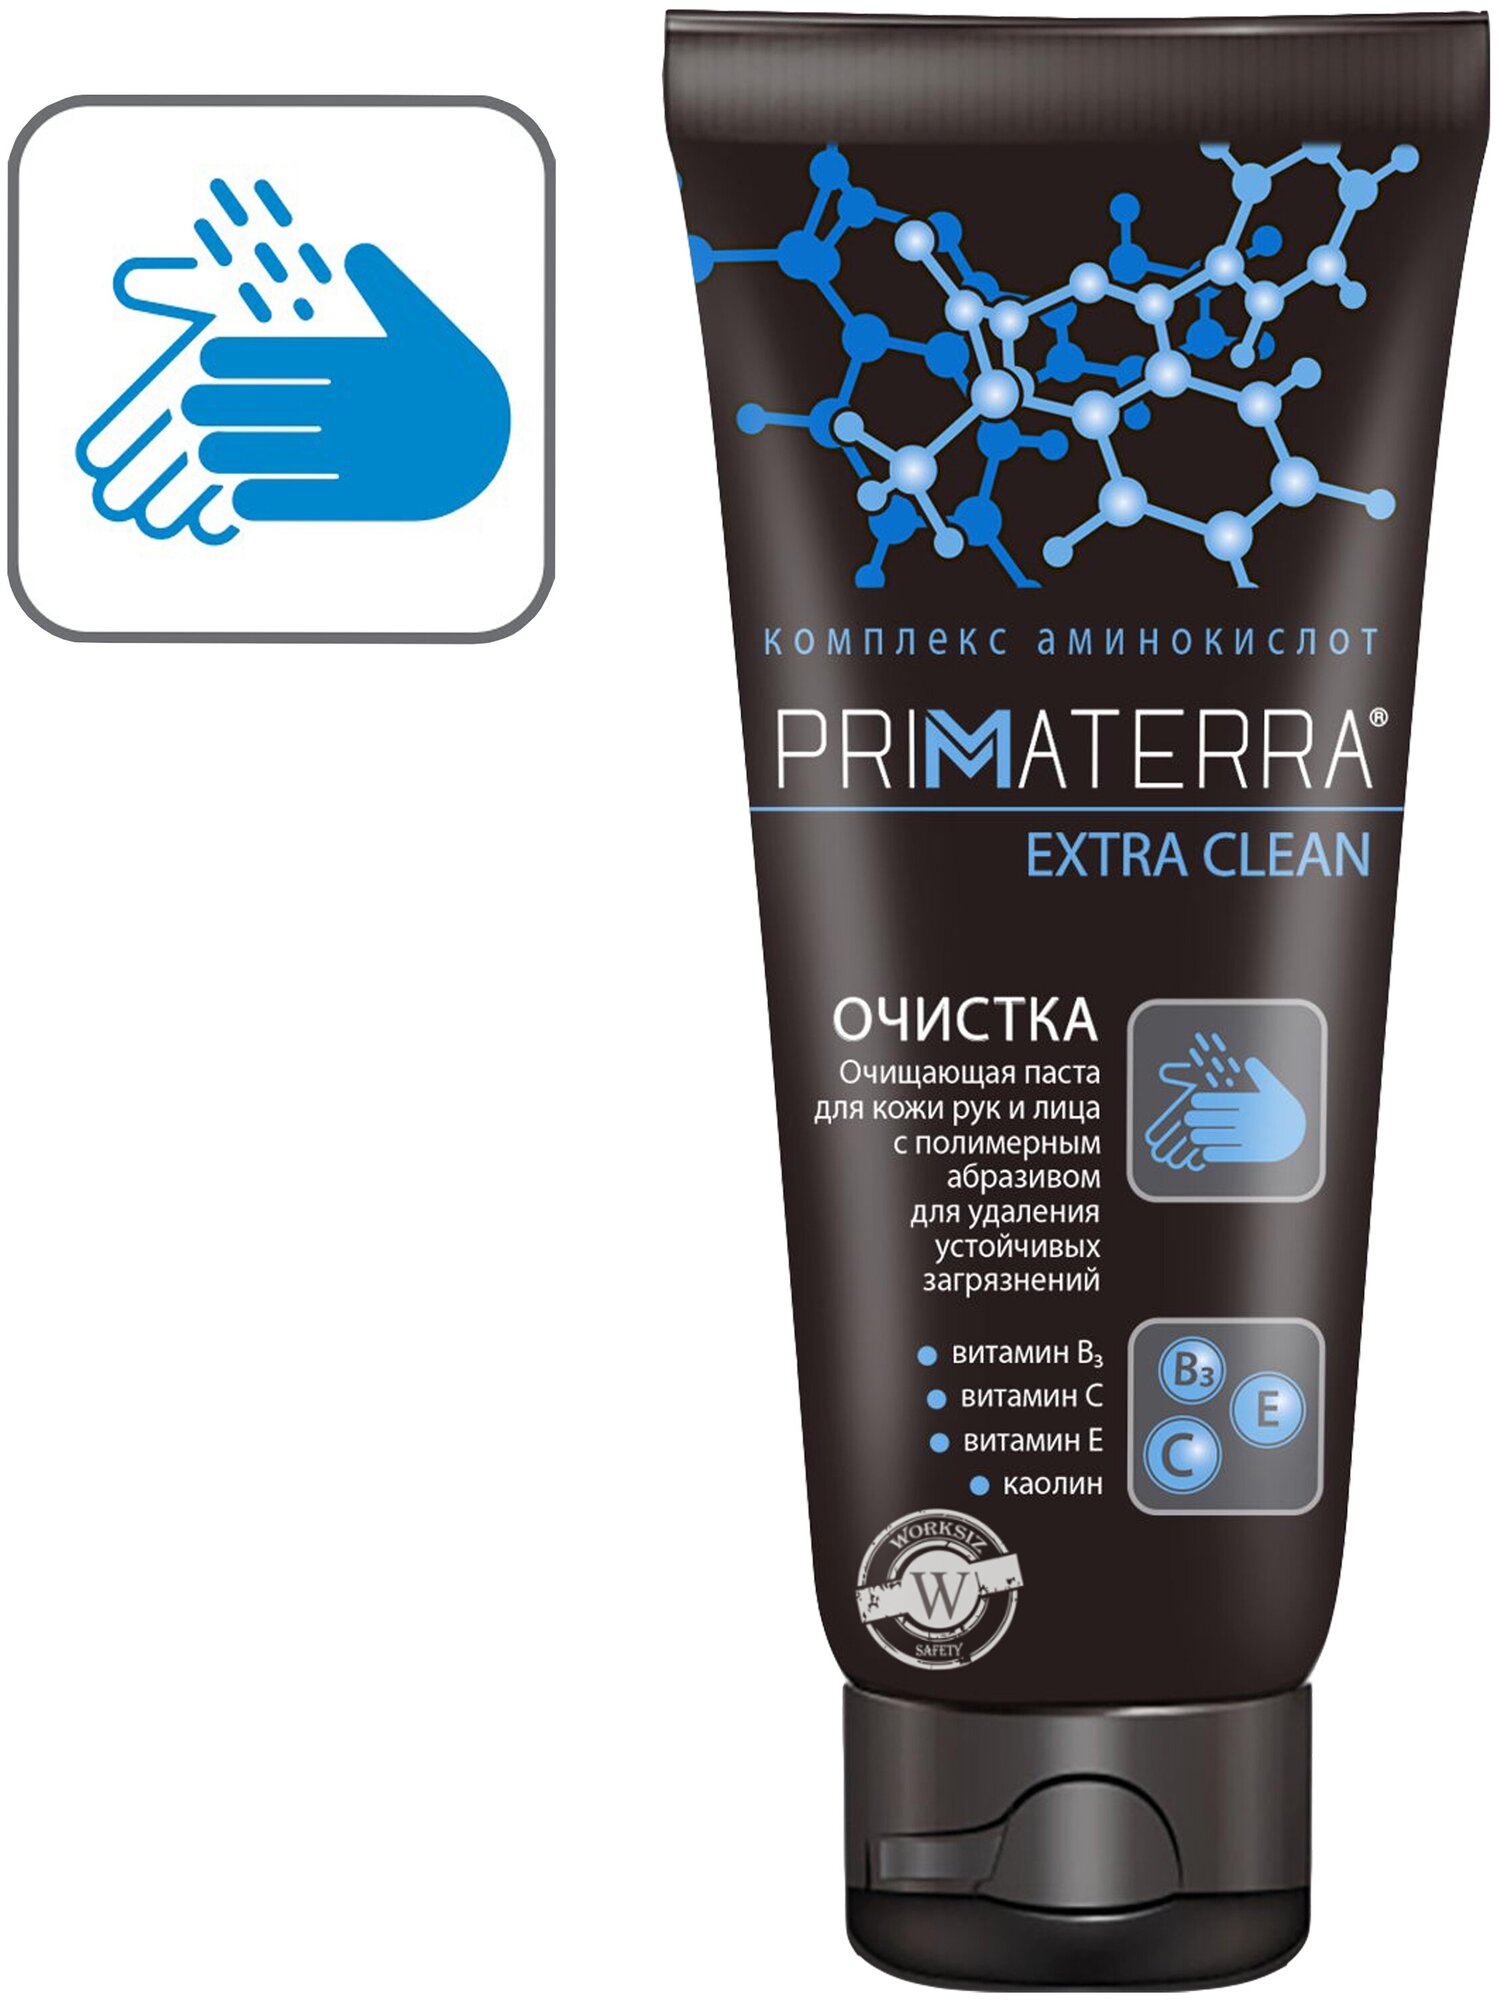 Очищающая паста c абразивом PRIMATERRA EXTRA CLEAN для удаления с кожи рук и лица устойчивых загрязнений